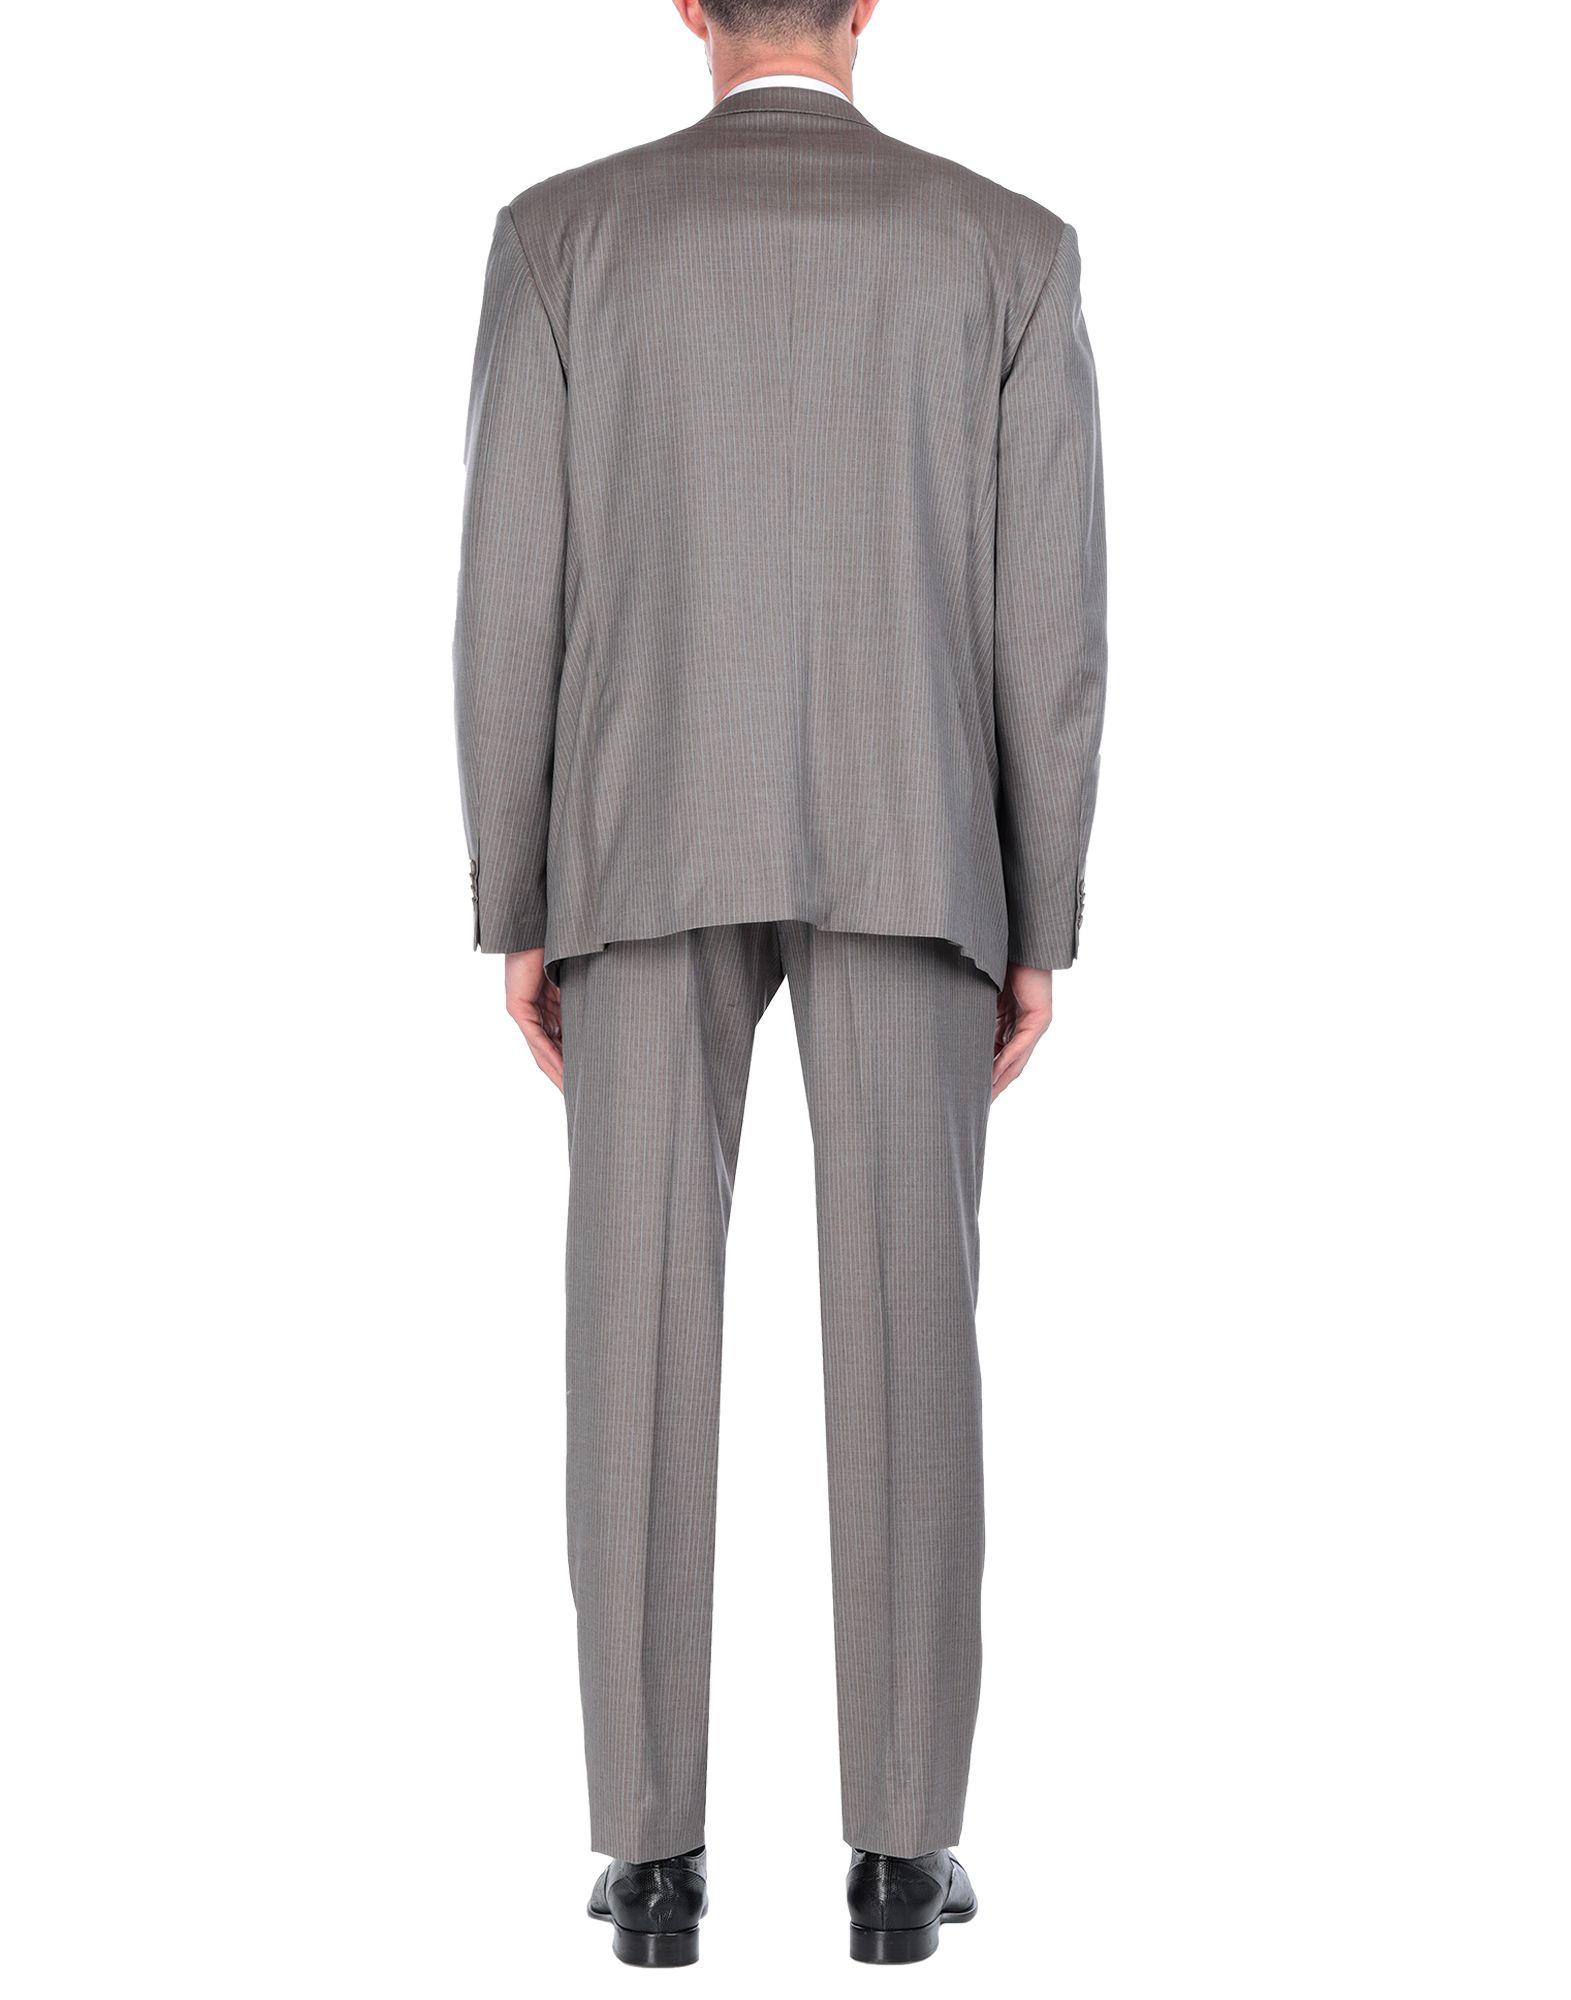 Tru Trussardi Wool Suit in Khaki (Gray) for Men - Lyst